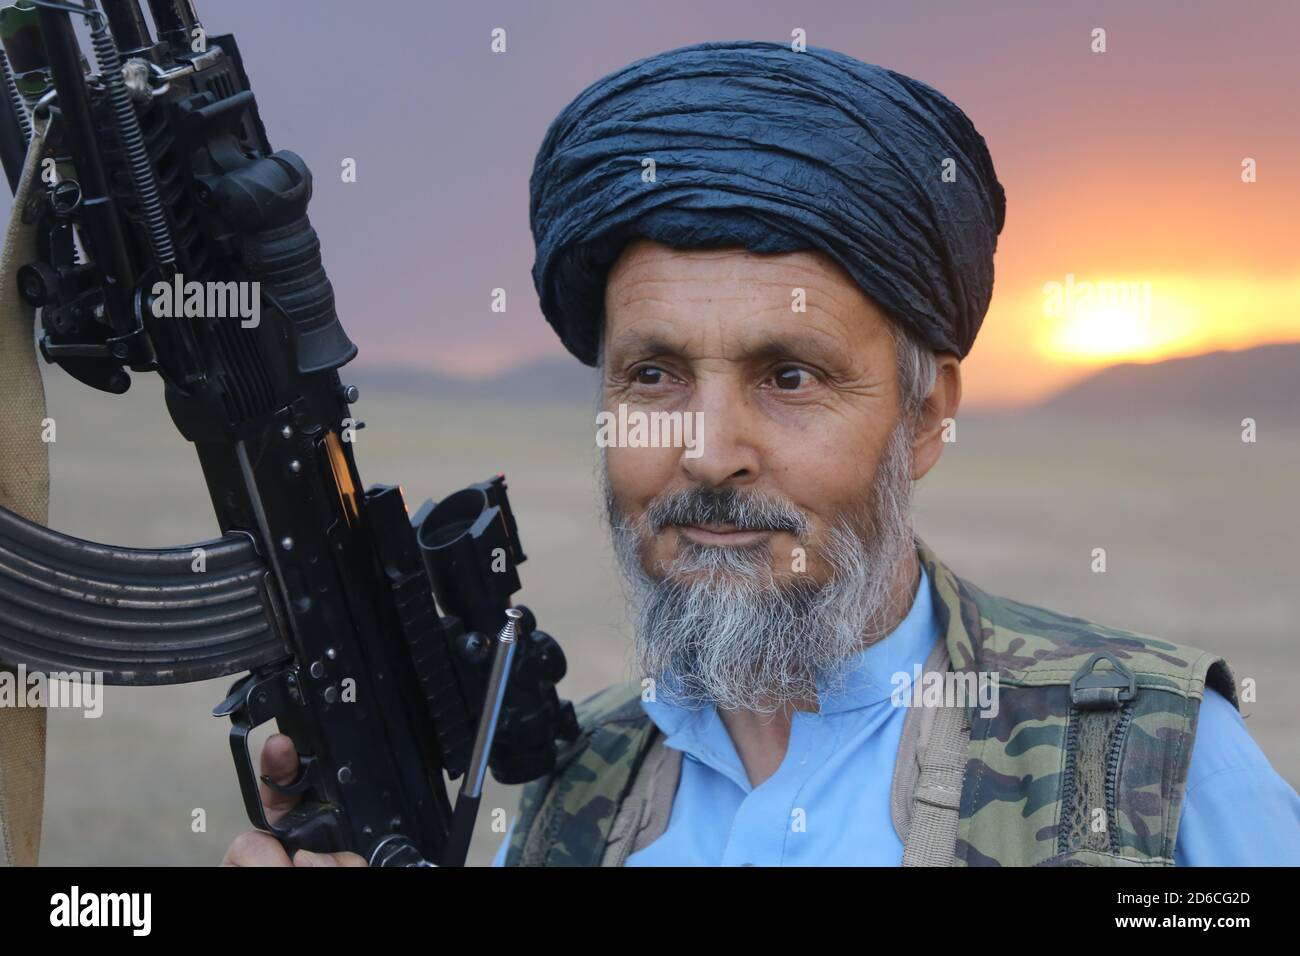 Das Bild stammt von den Taliban, die den Taliban-Kämpfer zeigen.Er hält eine Waffe. 13. Mai 2020, Mohammad Agha, Provinz Logar, Afghanistan. Stockfoto